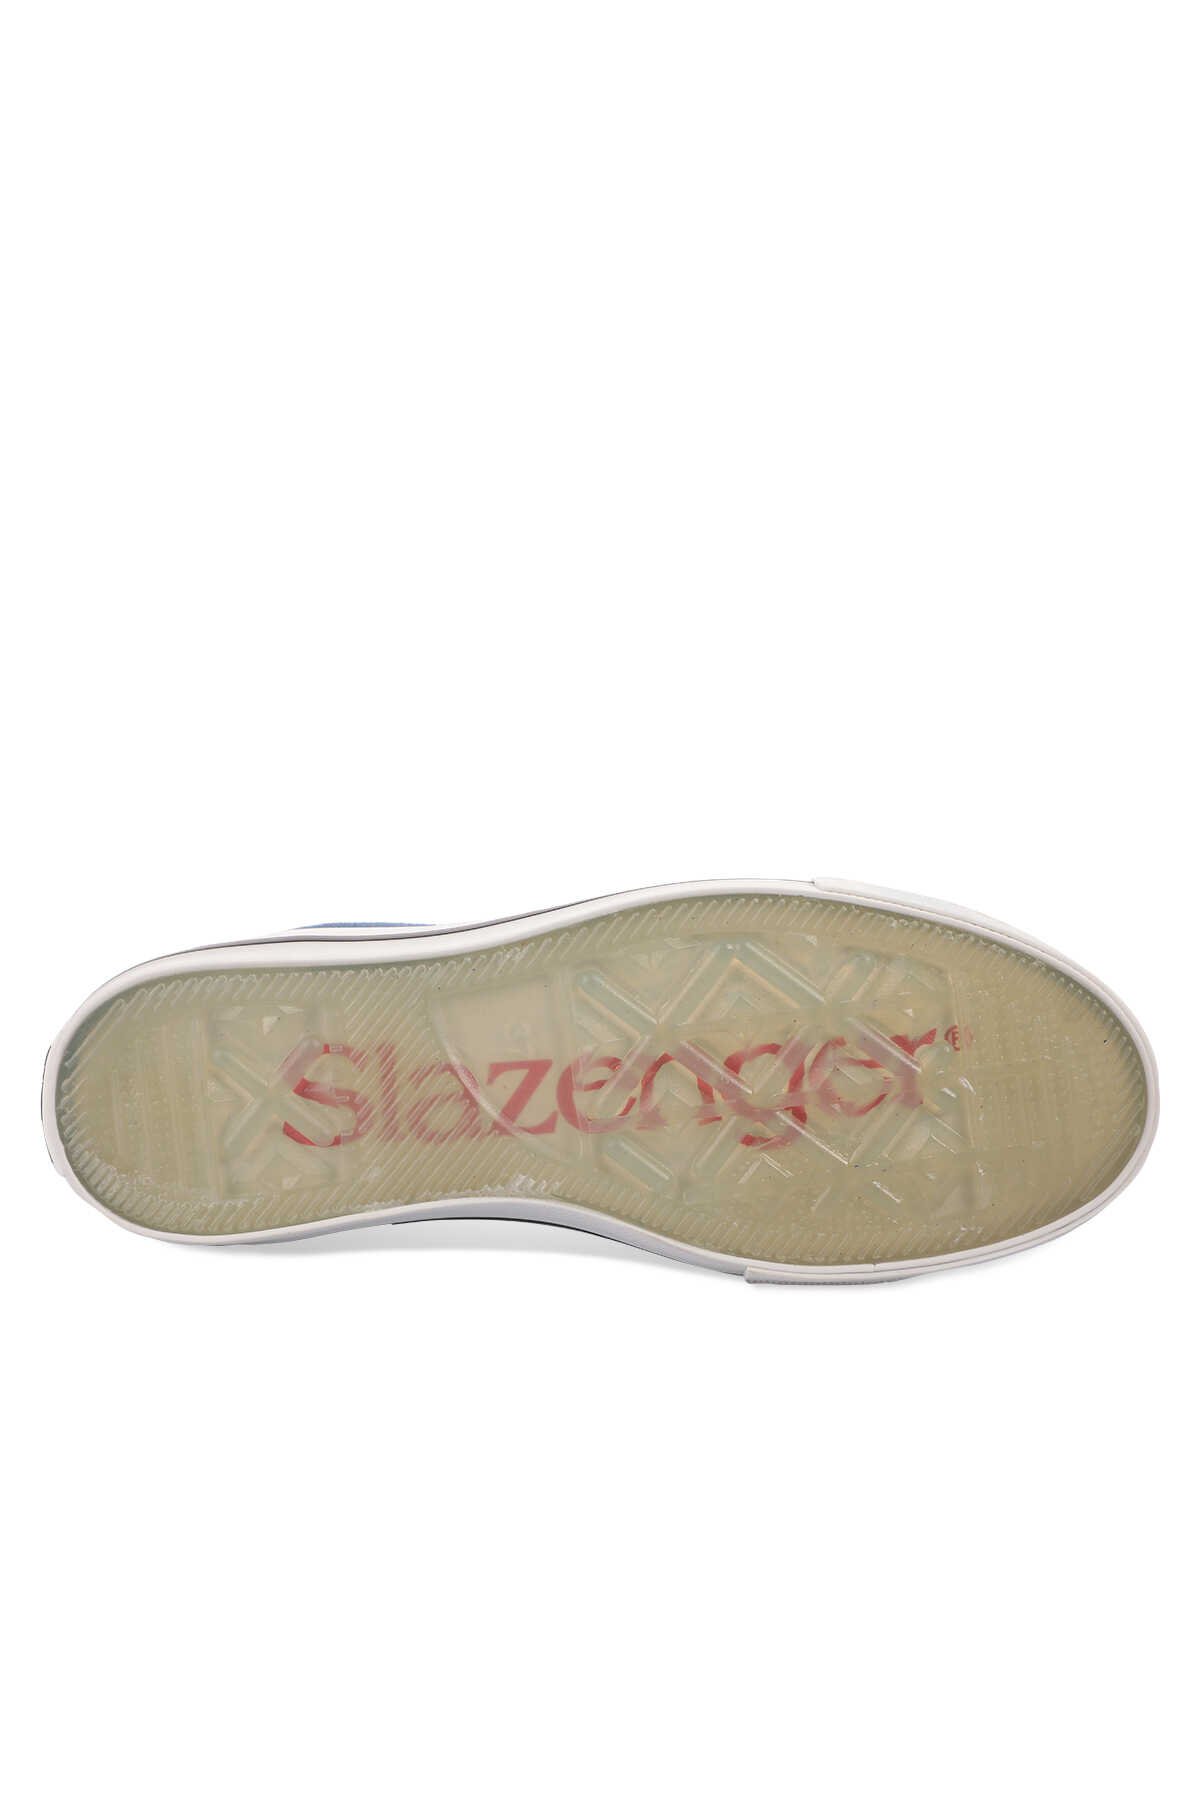 Slazenger SUN Sneaker Kadın Ayakkabı Lacivert